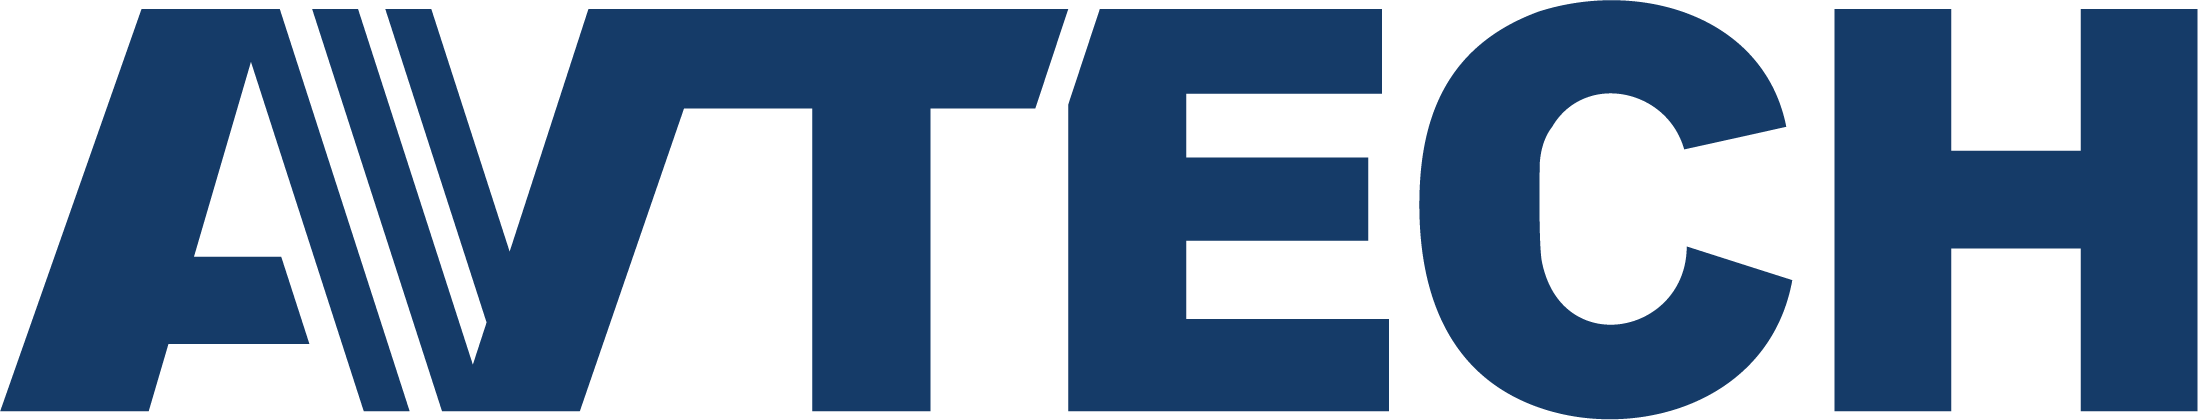 Av tech. Автеч. AVTECH IP avt1303. Tech лого. Av Tech logo.